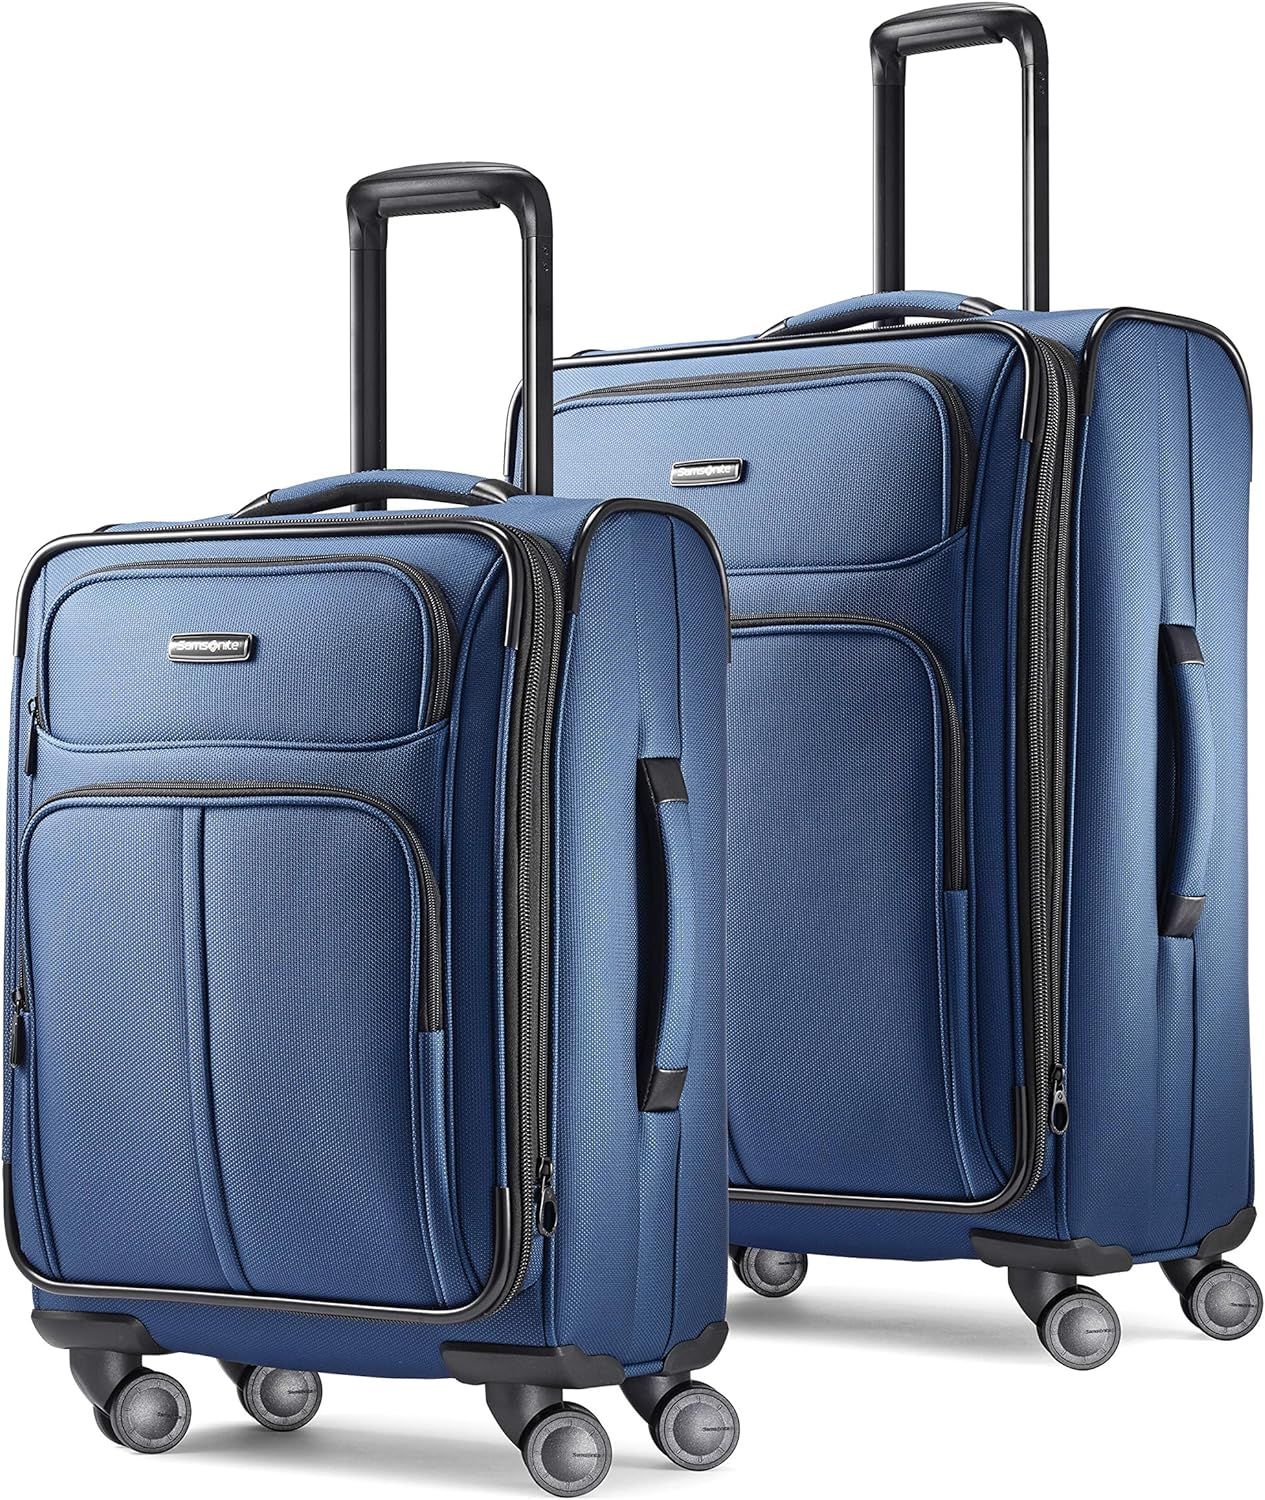 Samsonite Leverage LTE Softside Expandable Luggage with Spinner Wheels, Poseidon Blue, 2-Piece Se... | Amazon (US)